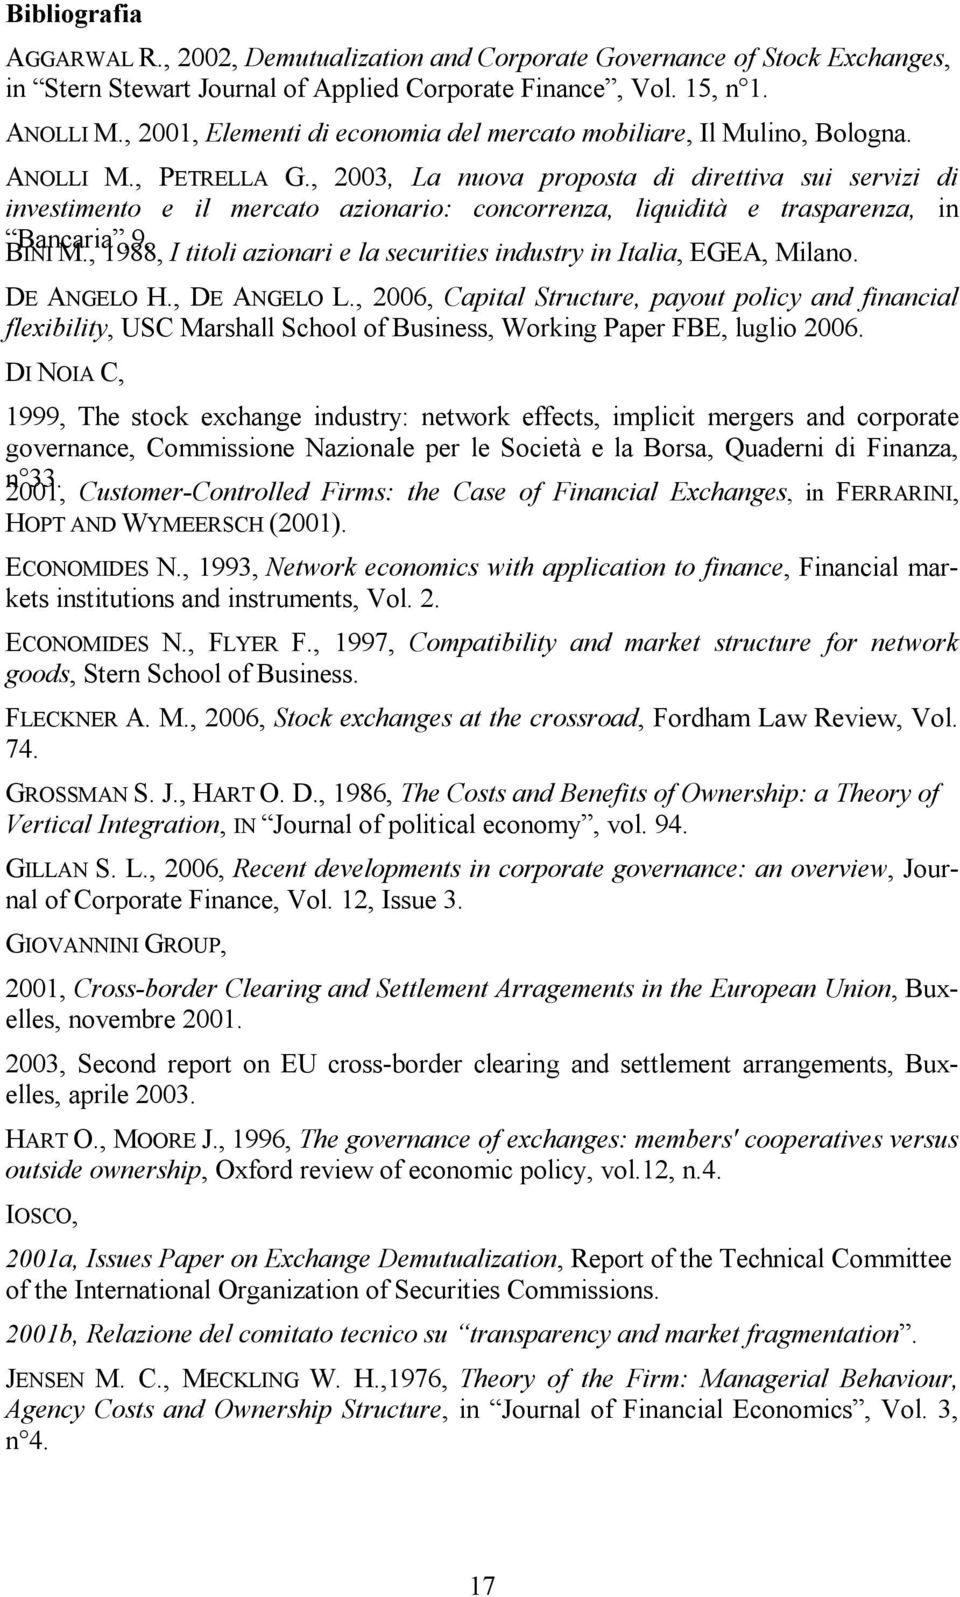 , 2003, La nuova proposta di direttiva sui servizi di investimento e il mercato azionario: concorrenza, liquidità e trasparenza, in Bancaria,9. BINI M.